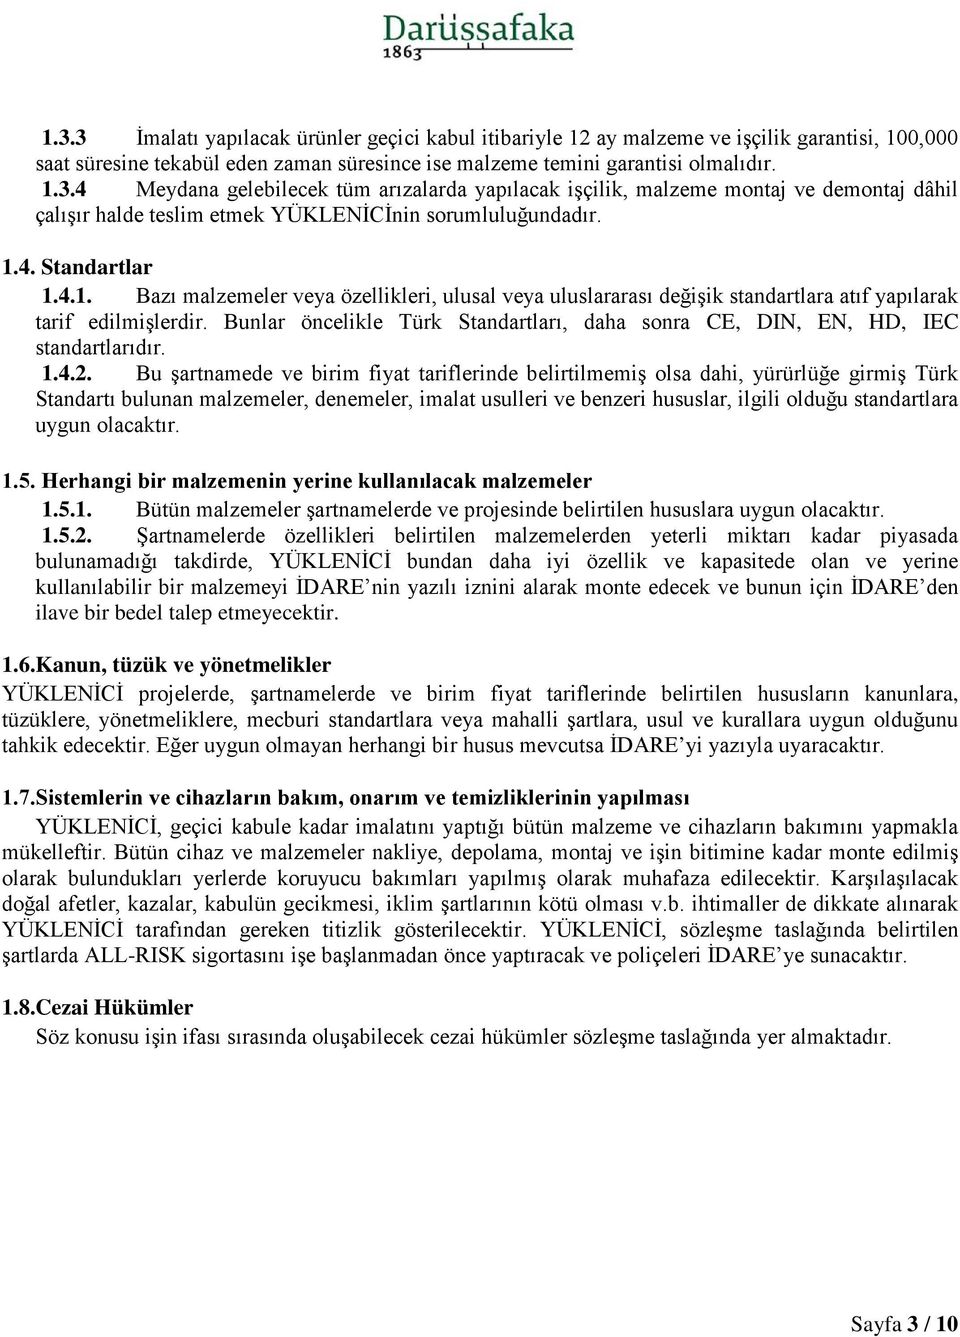 Bunlar öncelikle Türk Standartları, daha sonra CE, DIN, EN, HD, IEC standartlarıdır. 1.4.2.